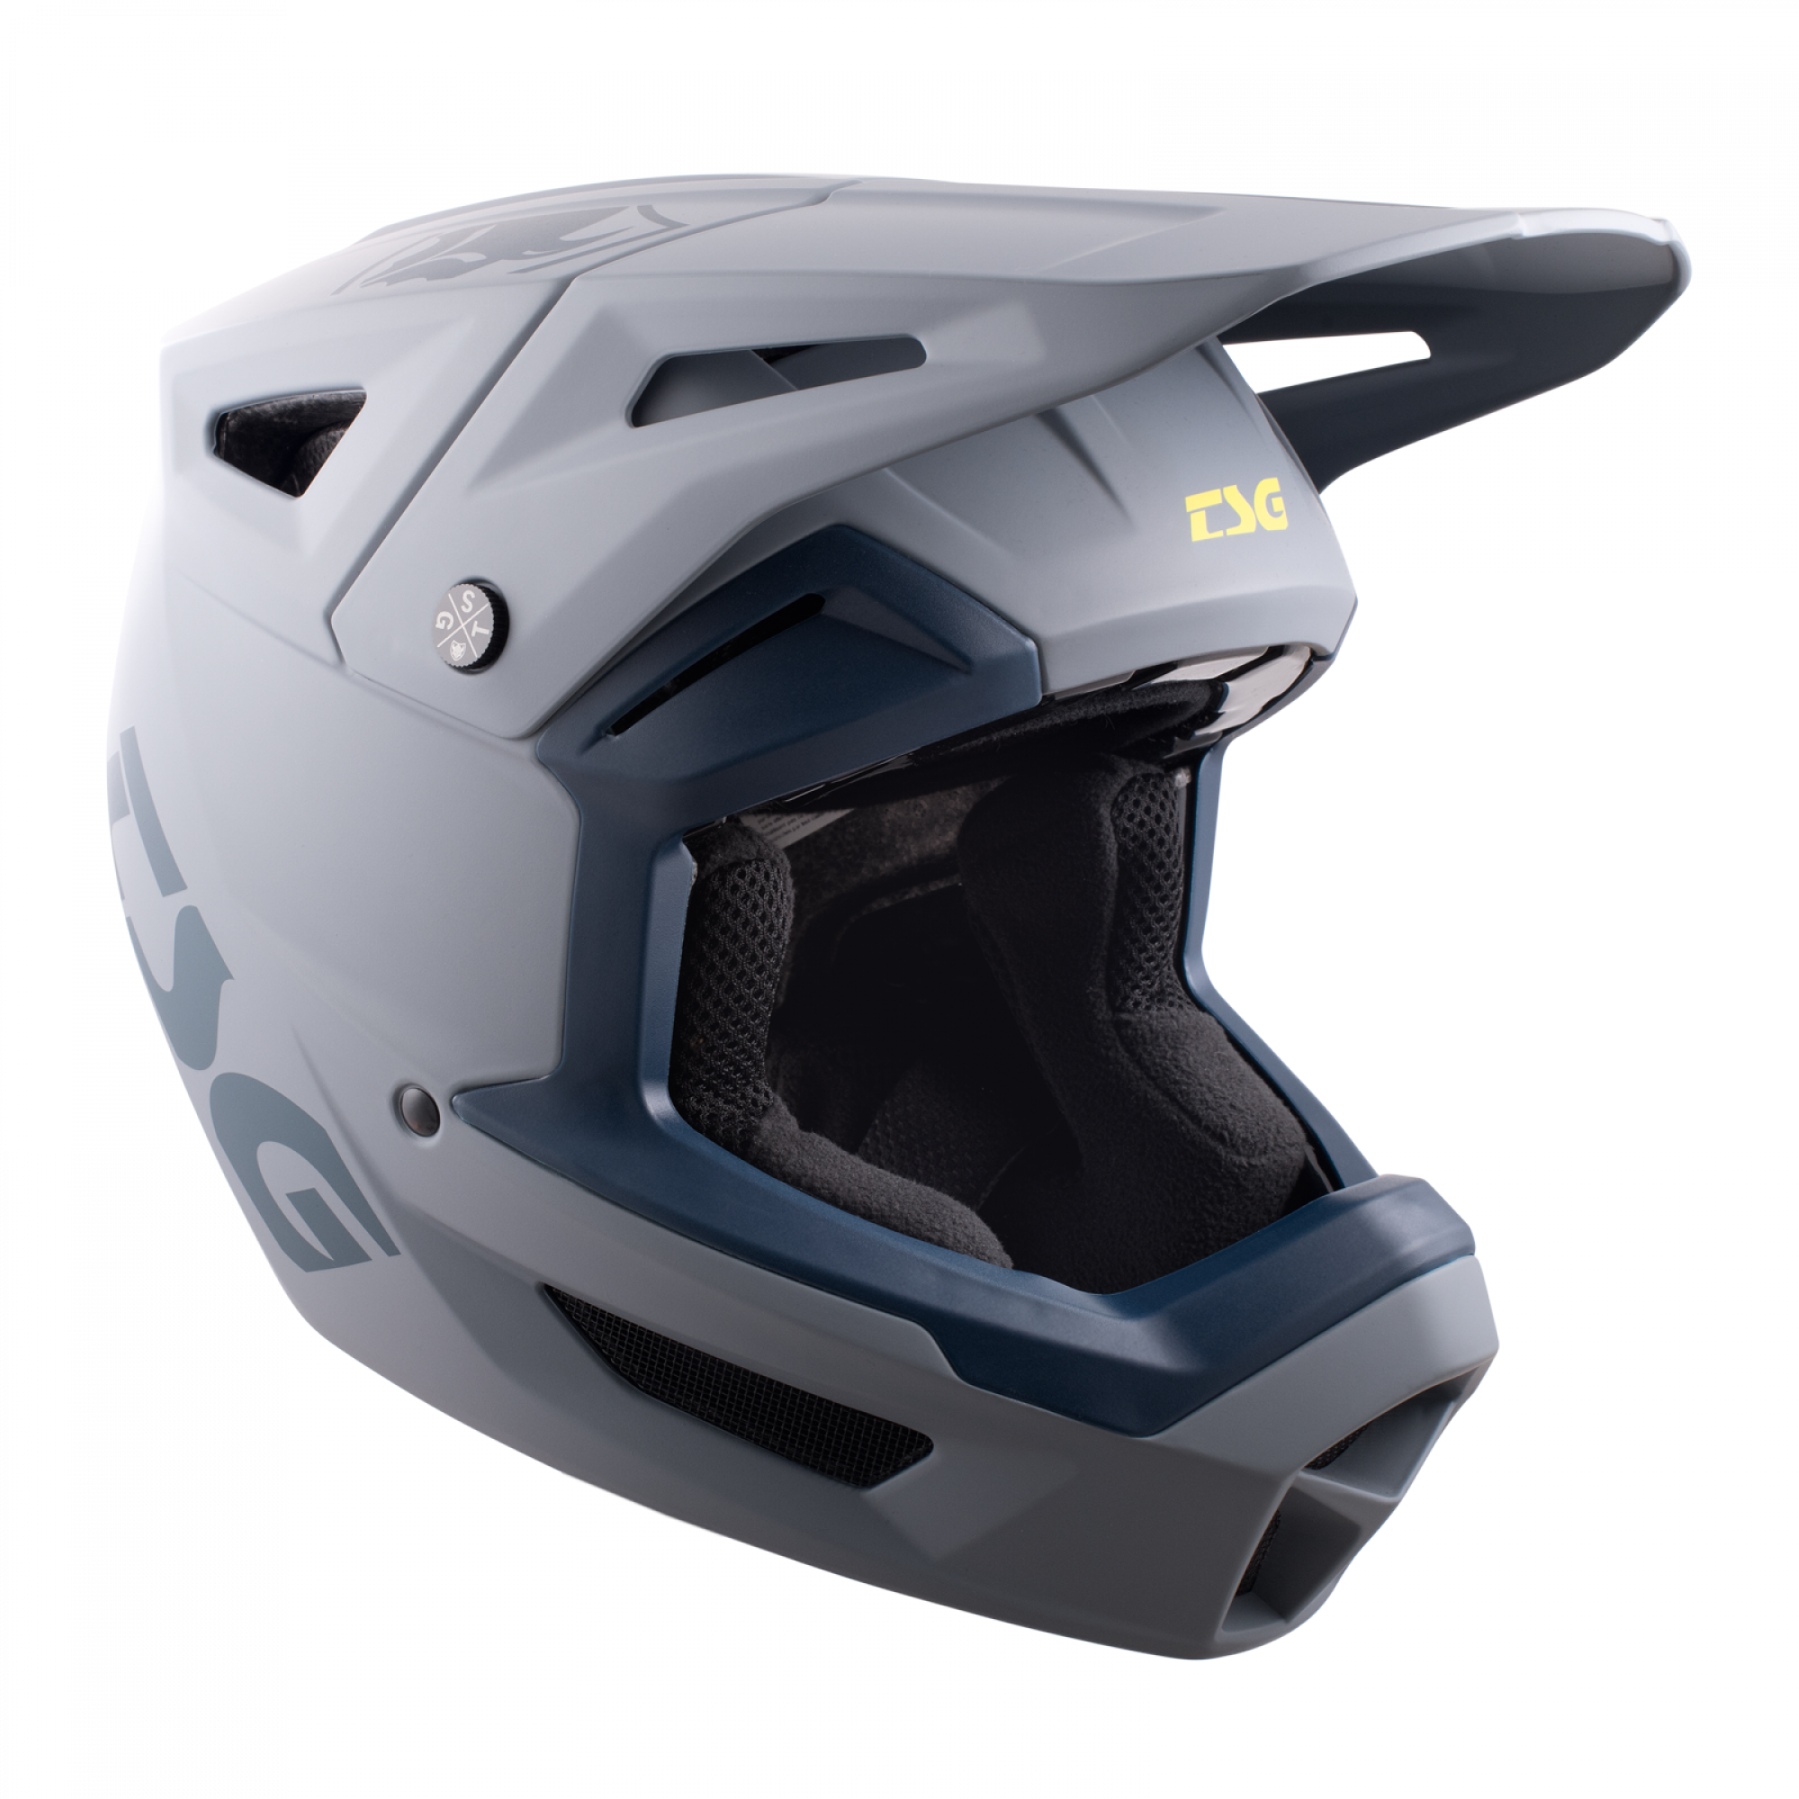 Produktbild von TSG Sentinel Solid Color Helm - satin grey